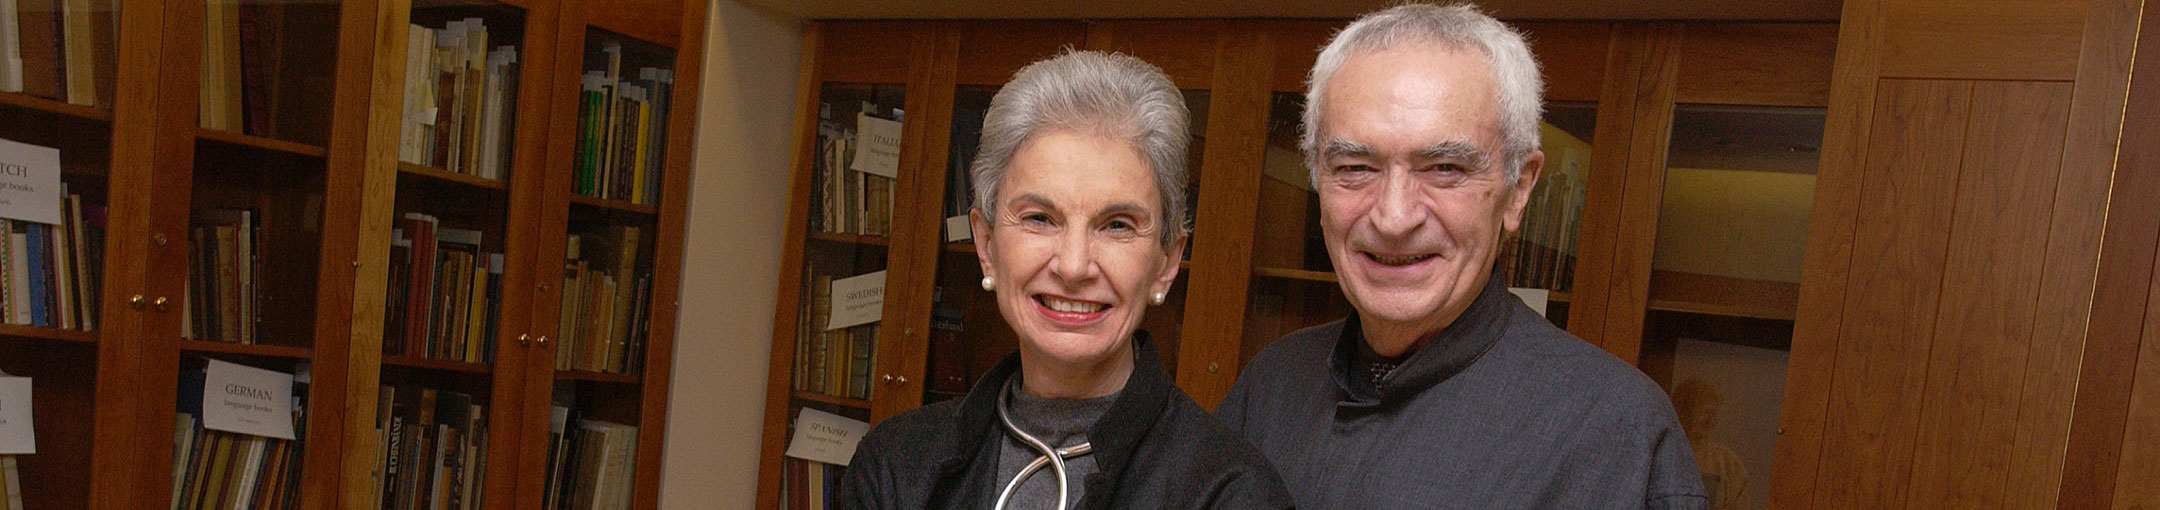 portrait of Massimo and Lella Vignelli in a library